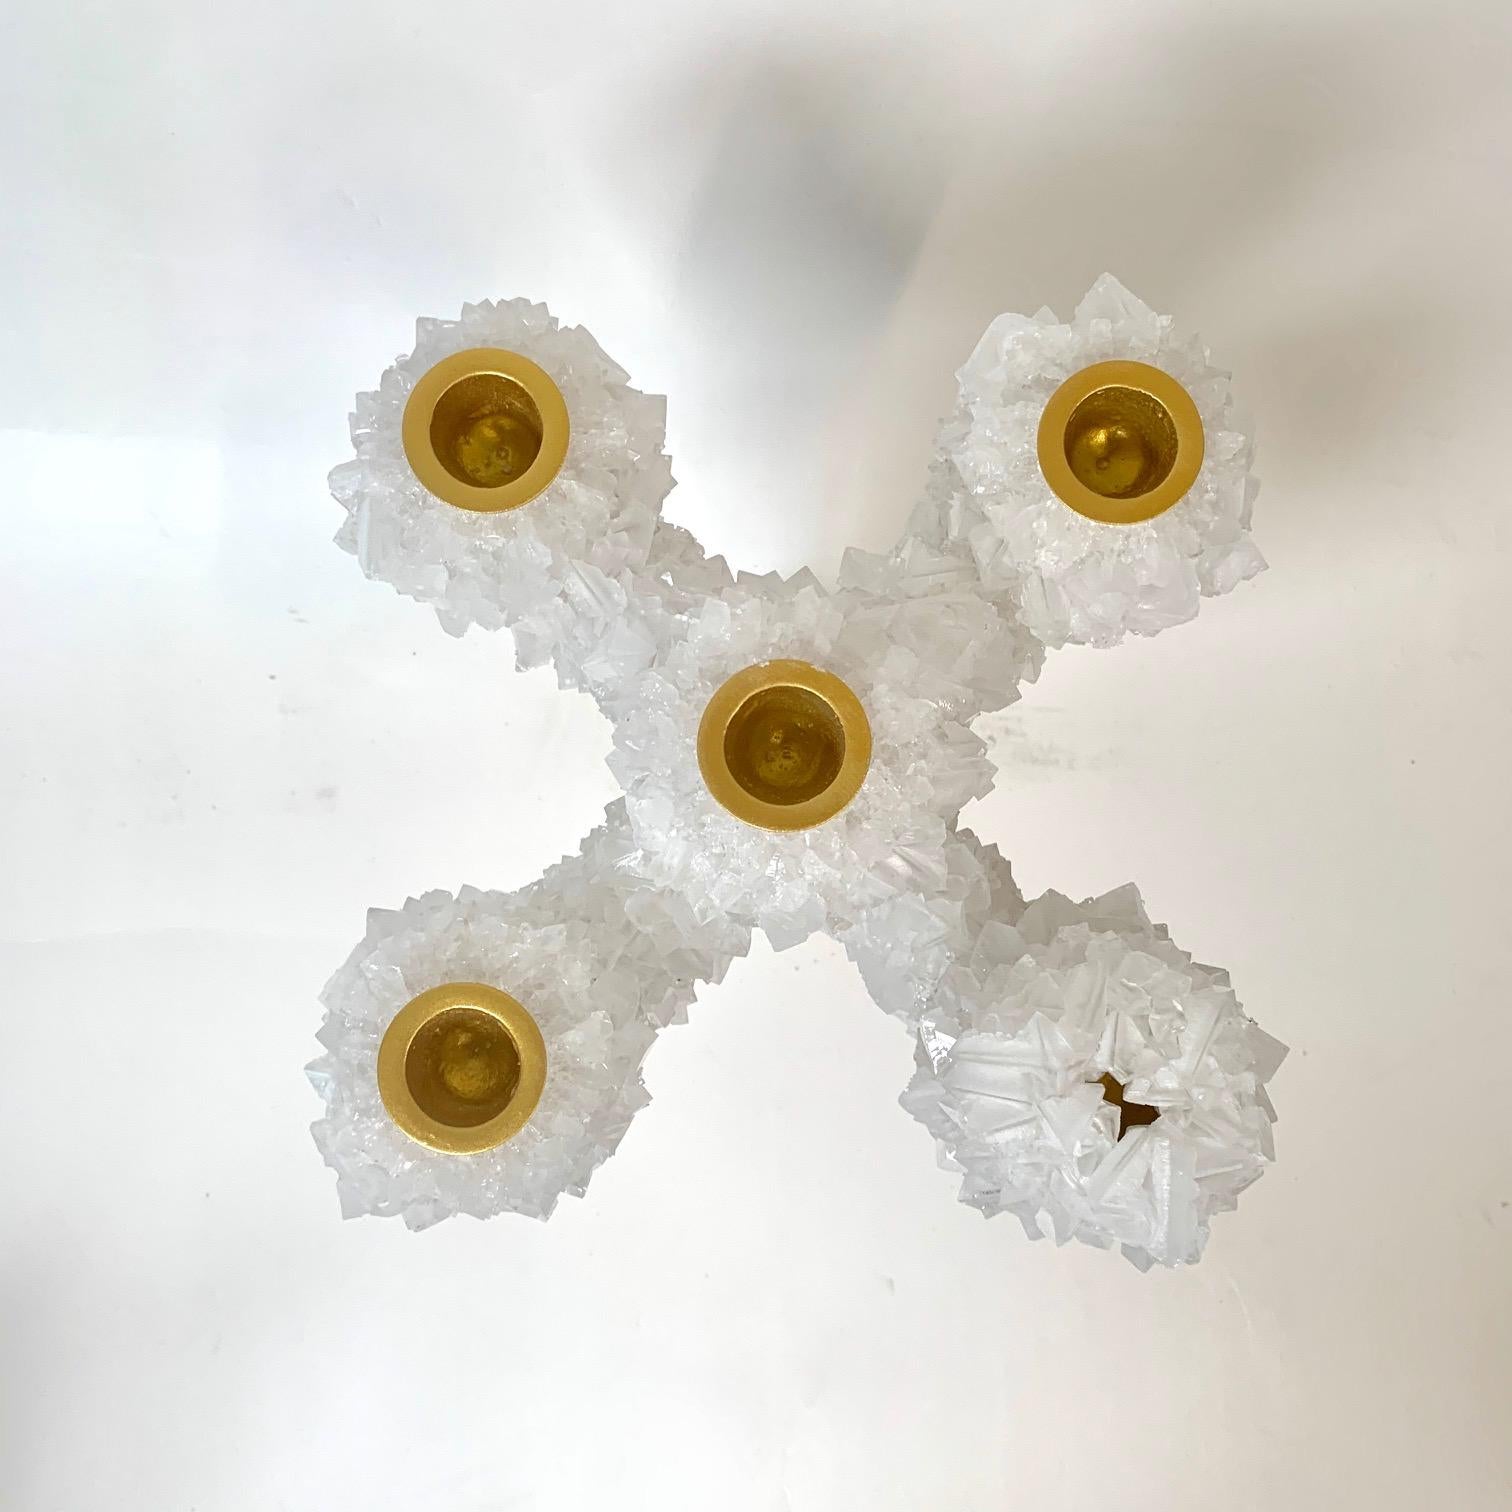 Mit Kristallen bewachsener Kandelaber von Mark Sturkenboom
Handgeformtes, einzigartiges Design-Kunstwerk von Mark Sturkenboom
Abmessungen: 34 x 25 x 25 cm
MATERIAL: Kerzenhalter aus Aluminium, natürlich gewachsenes Kristall
Detail: Kristall kann